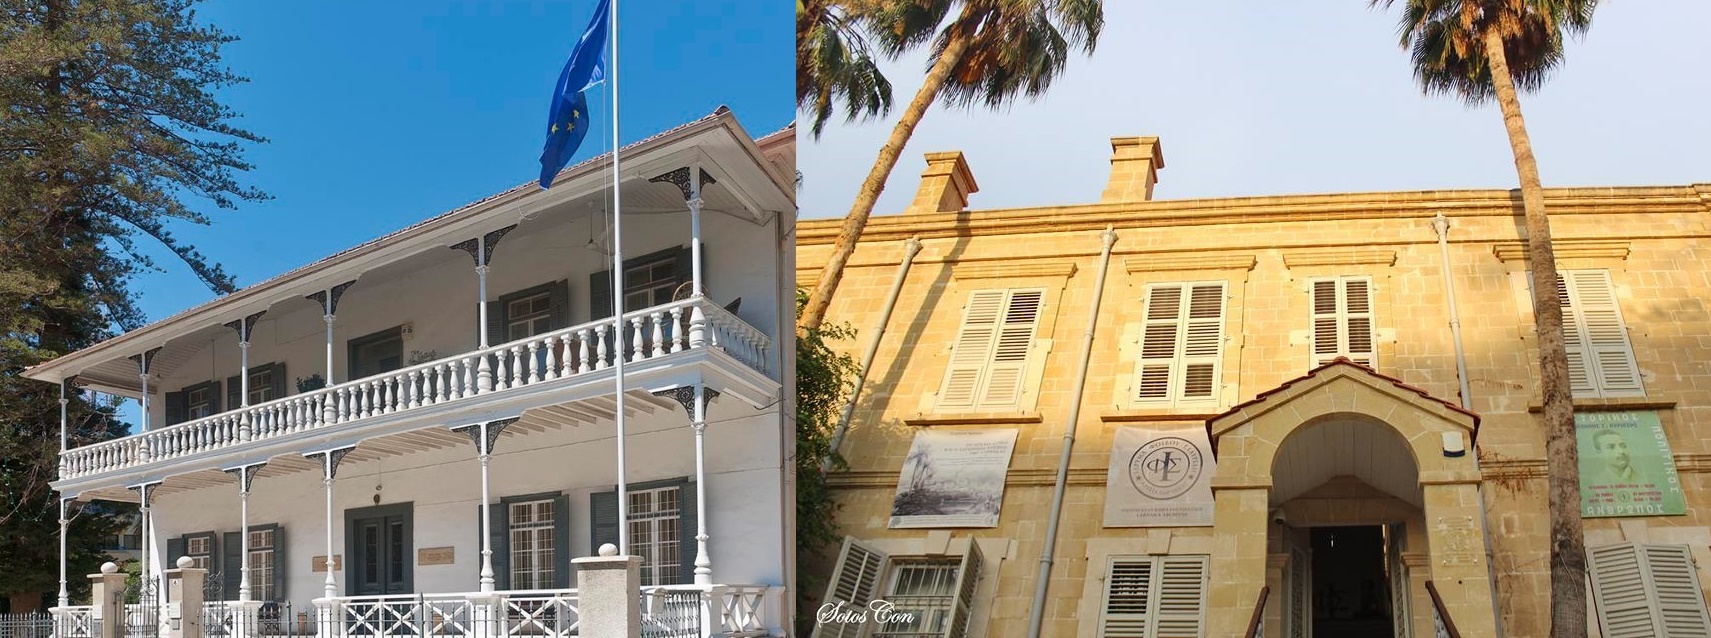 Μνημόνιο Συνεργασίας  Μουσείου Πιερίδη – Πολιτιστικού Ιδρύματος Τράπεζας Κύπρου και του Ιδρύματος Φοίβου Σταυρίδη-Αρχεία Λάρνακας